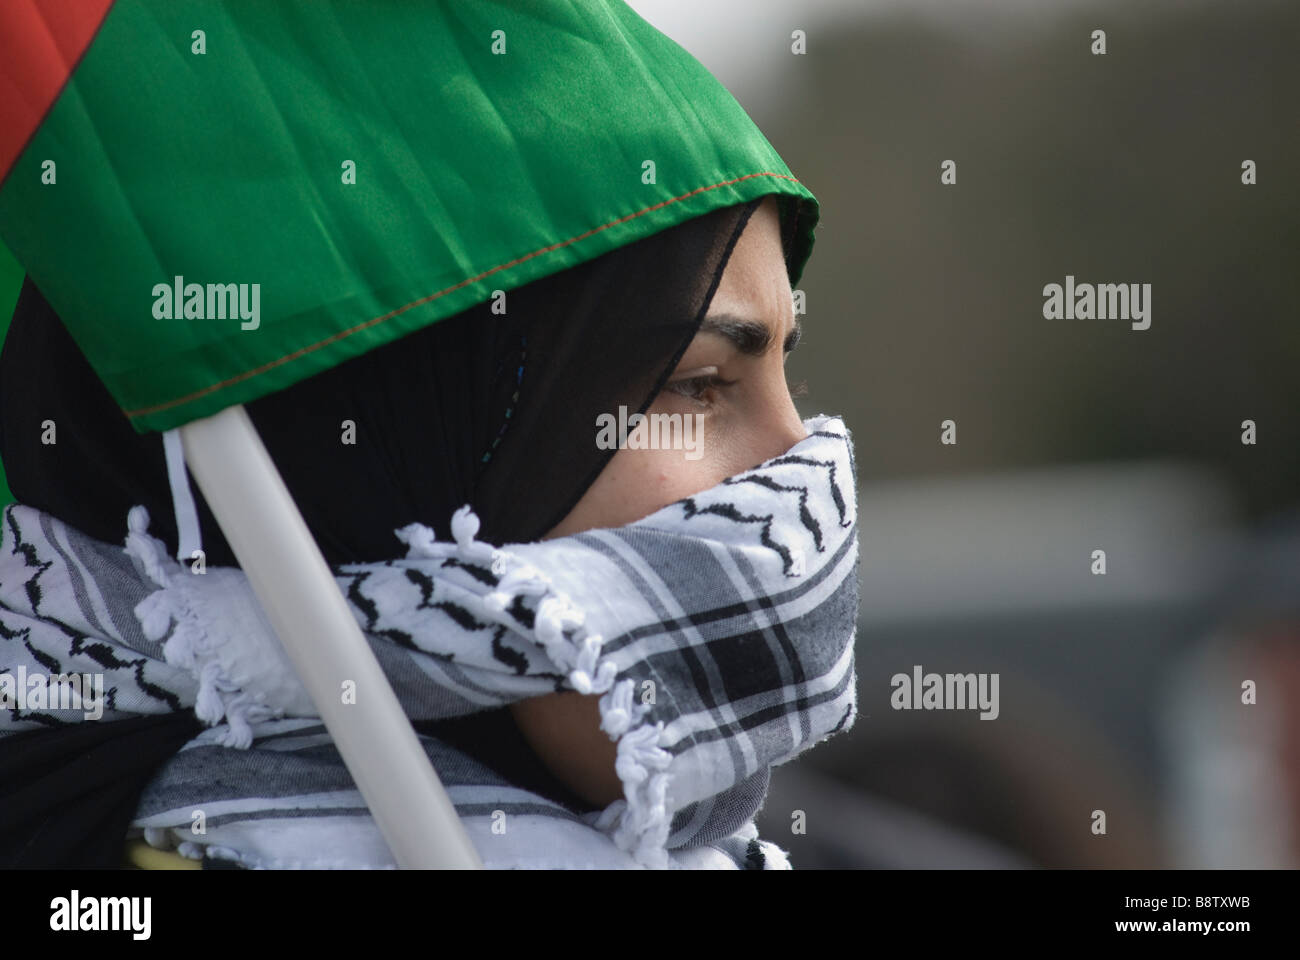 Die junge palästinensische Frau bedeckt ihr Gesicht während eines Protests im Westjordanland mit einem traditionellen schwarz-weißen Fischnetzmuster Keffiyeh oder kufiya-Schal Stockfoto